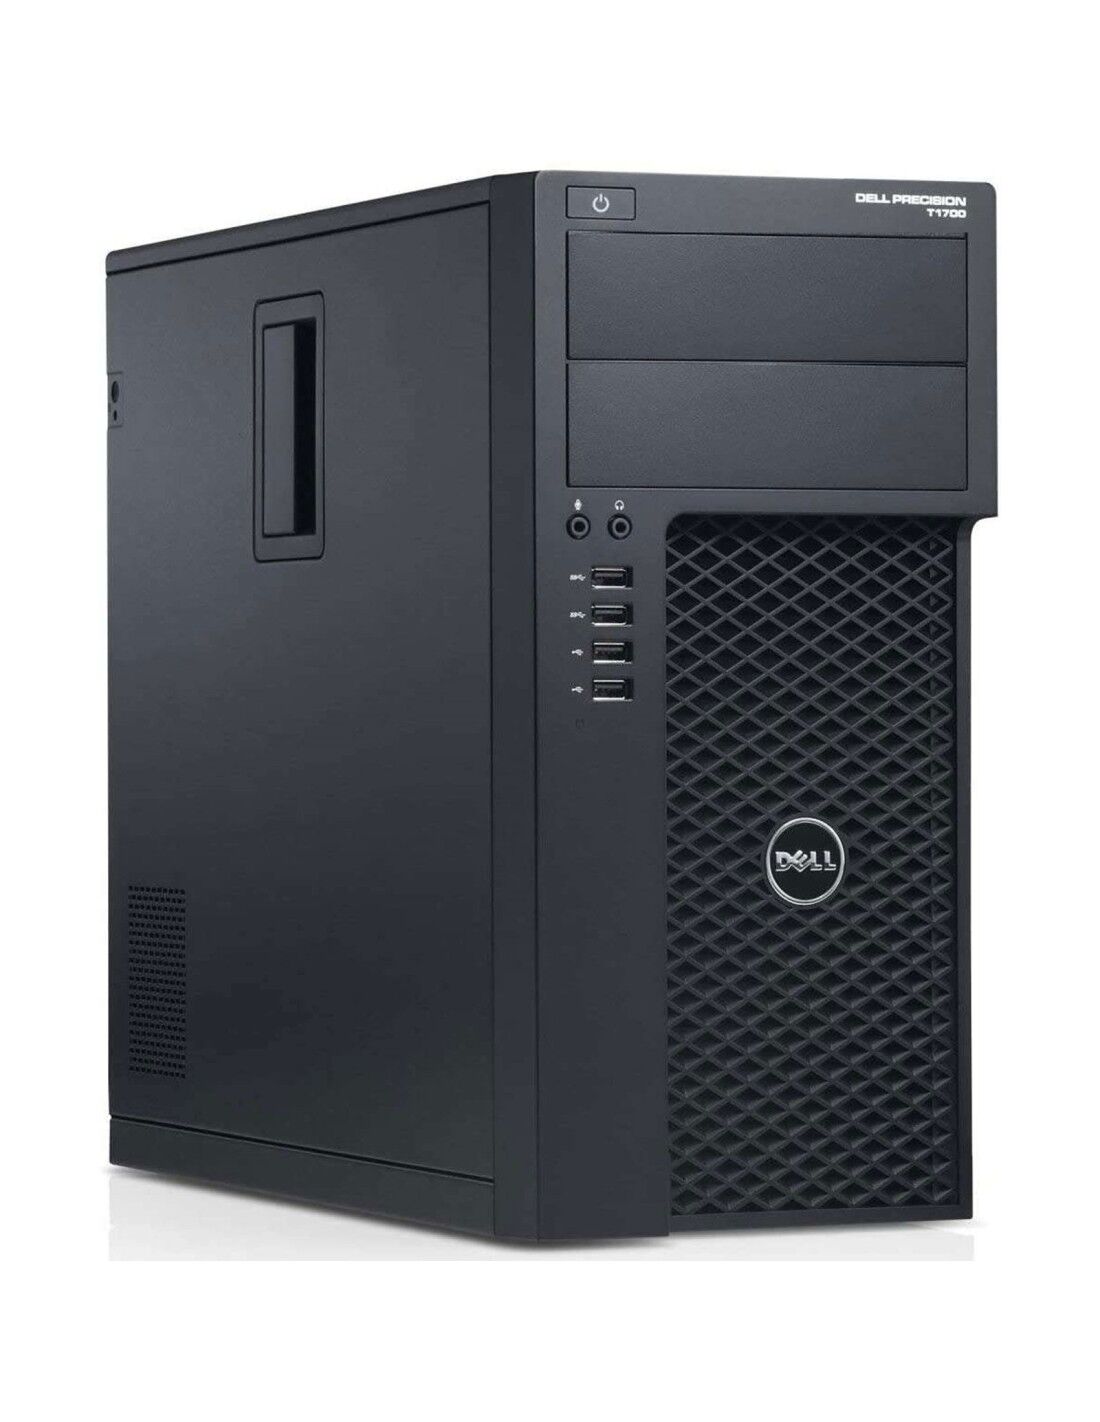 Dell Precision T1700 Tower Computer Intel i7-4770 Ram 8GB SSD 240GB Nvidia GT 730 2GB GDDR5 (Ricondizionato Grado A)